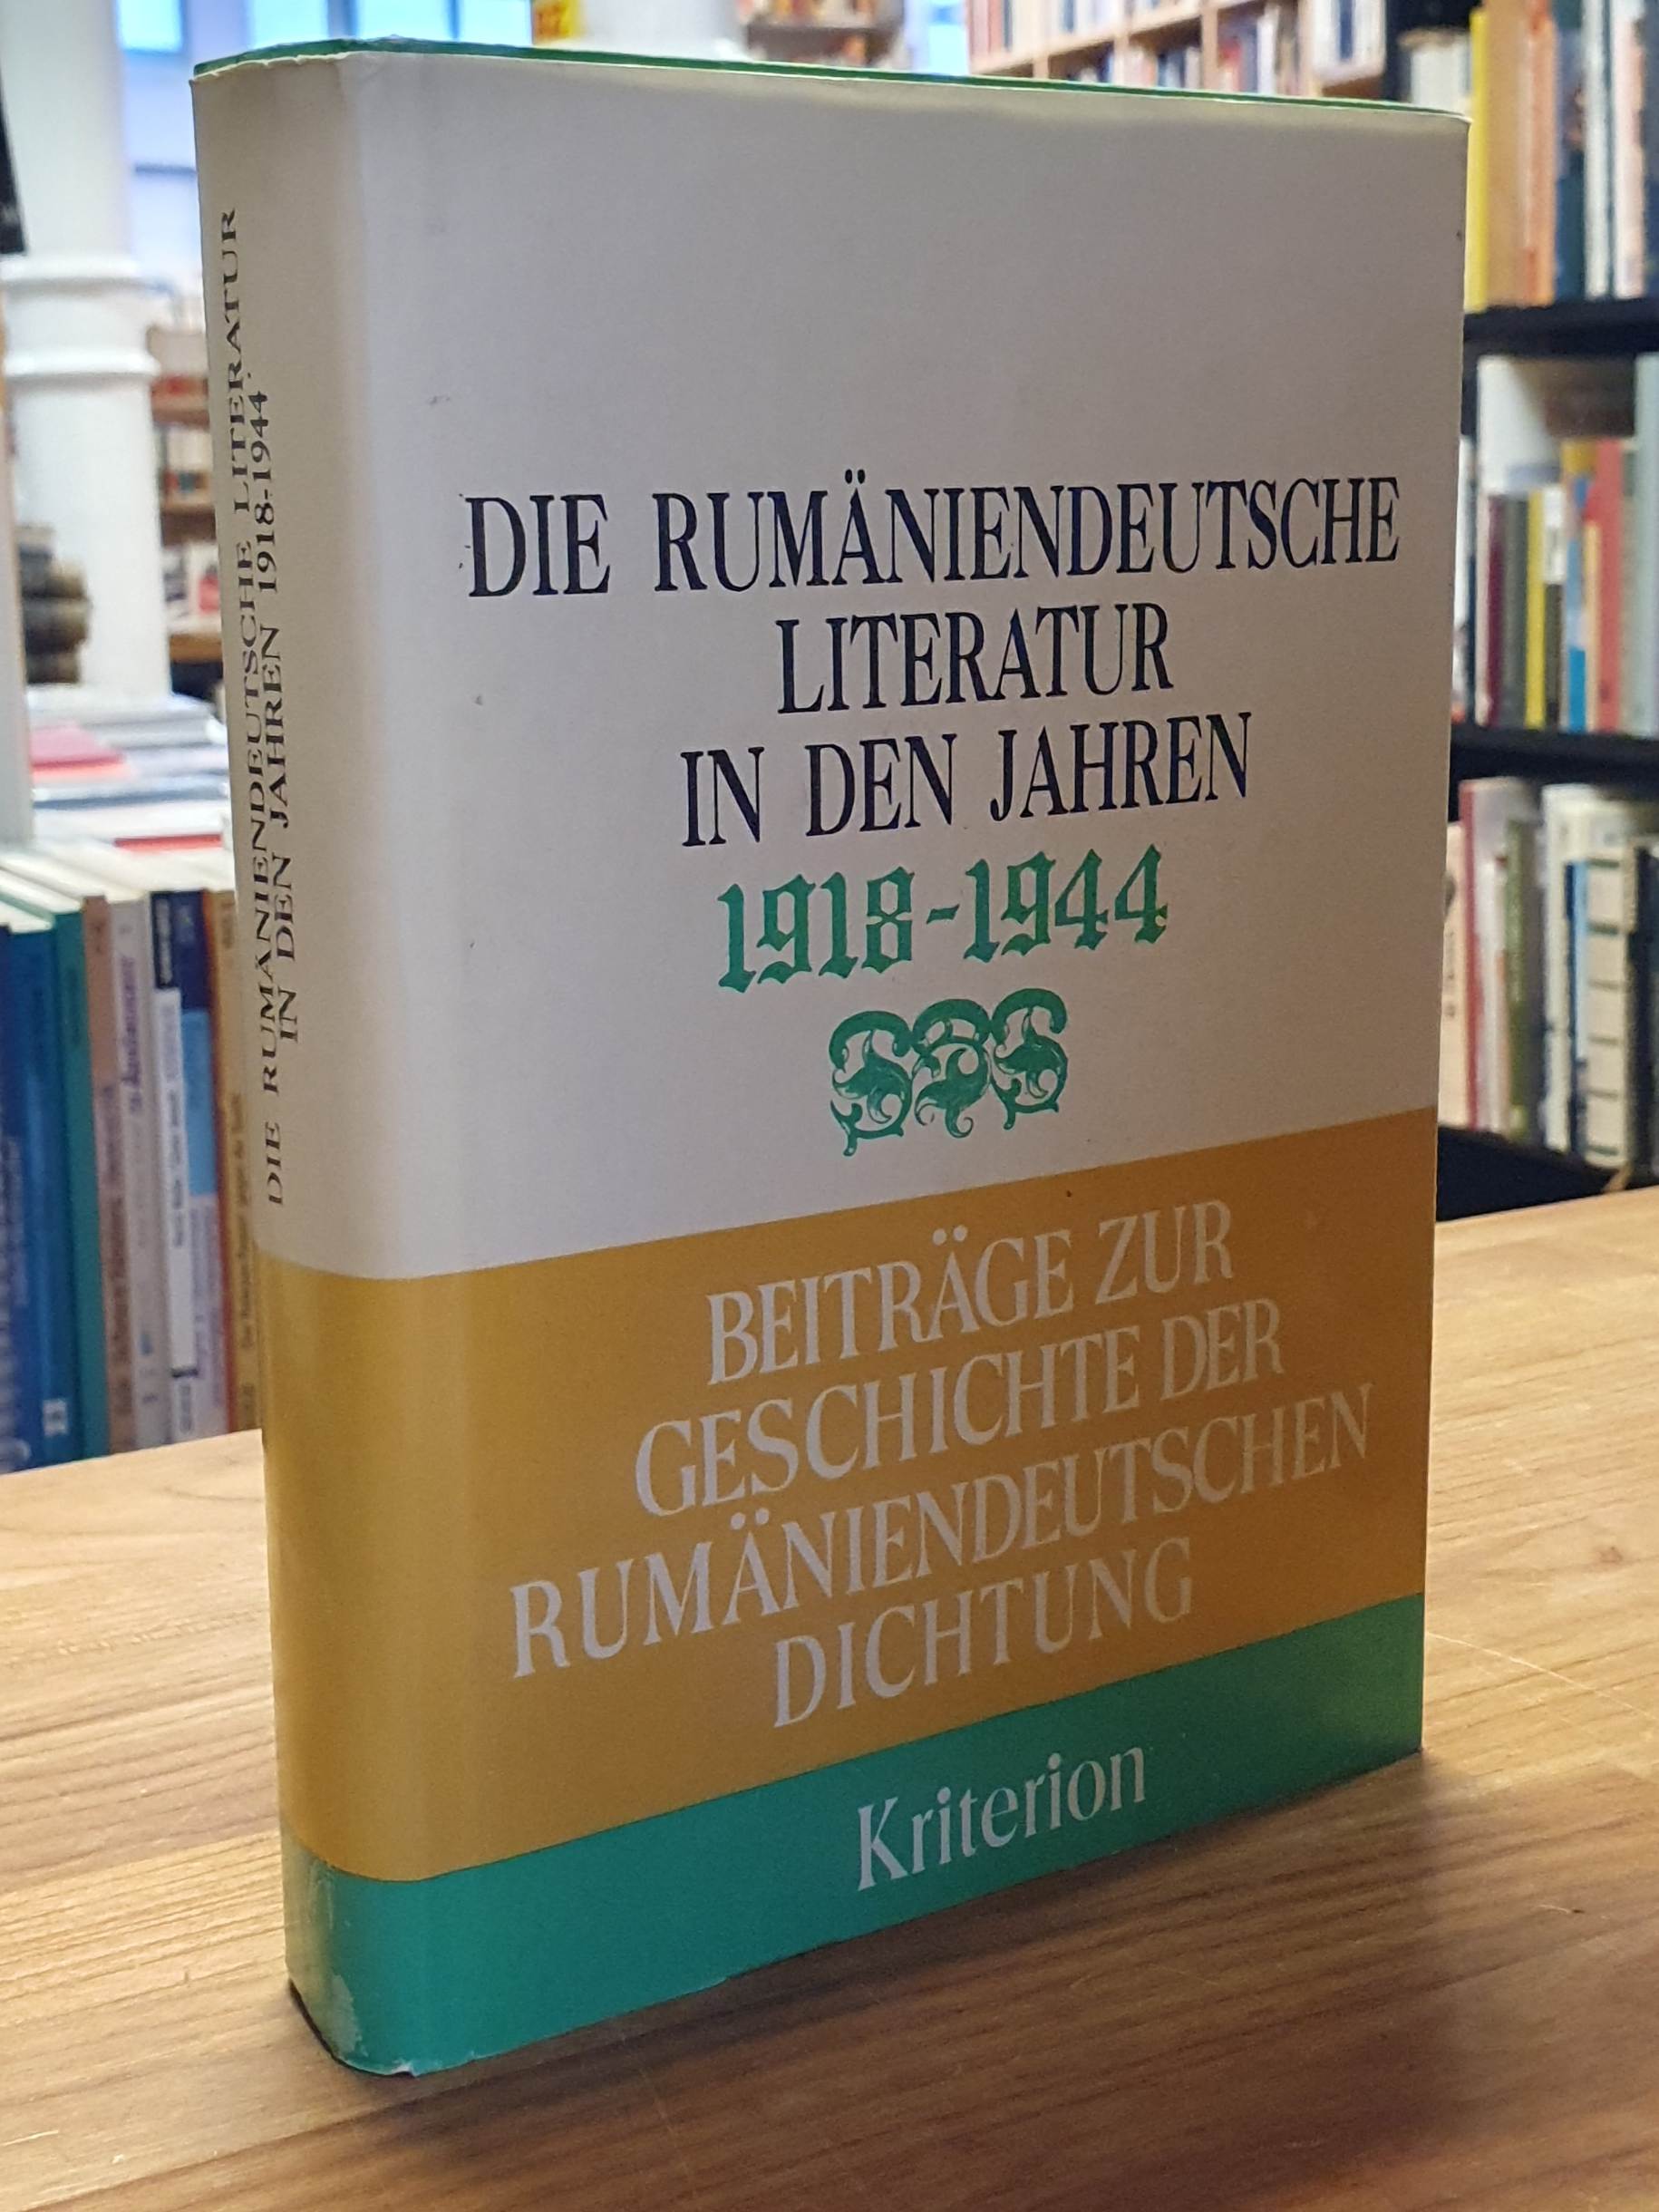 Berceanu, Die rumäniendeutsche Literatur in den Jahren 1918 – 1944,